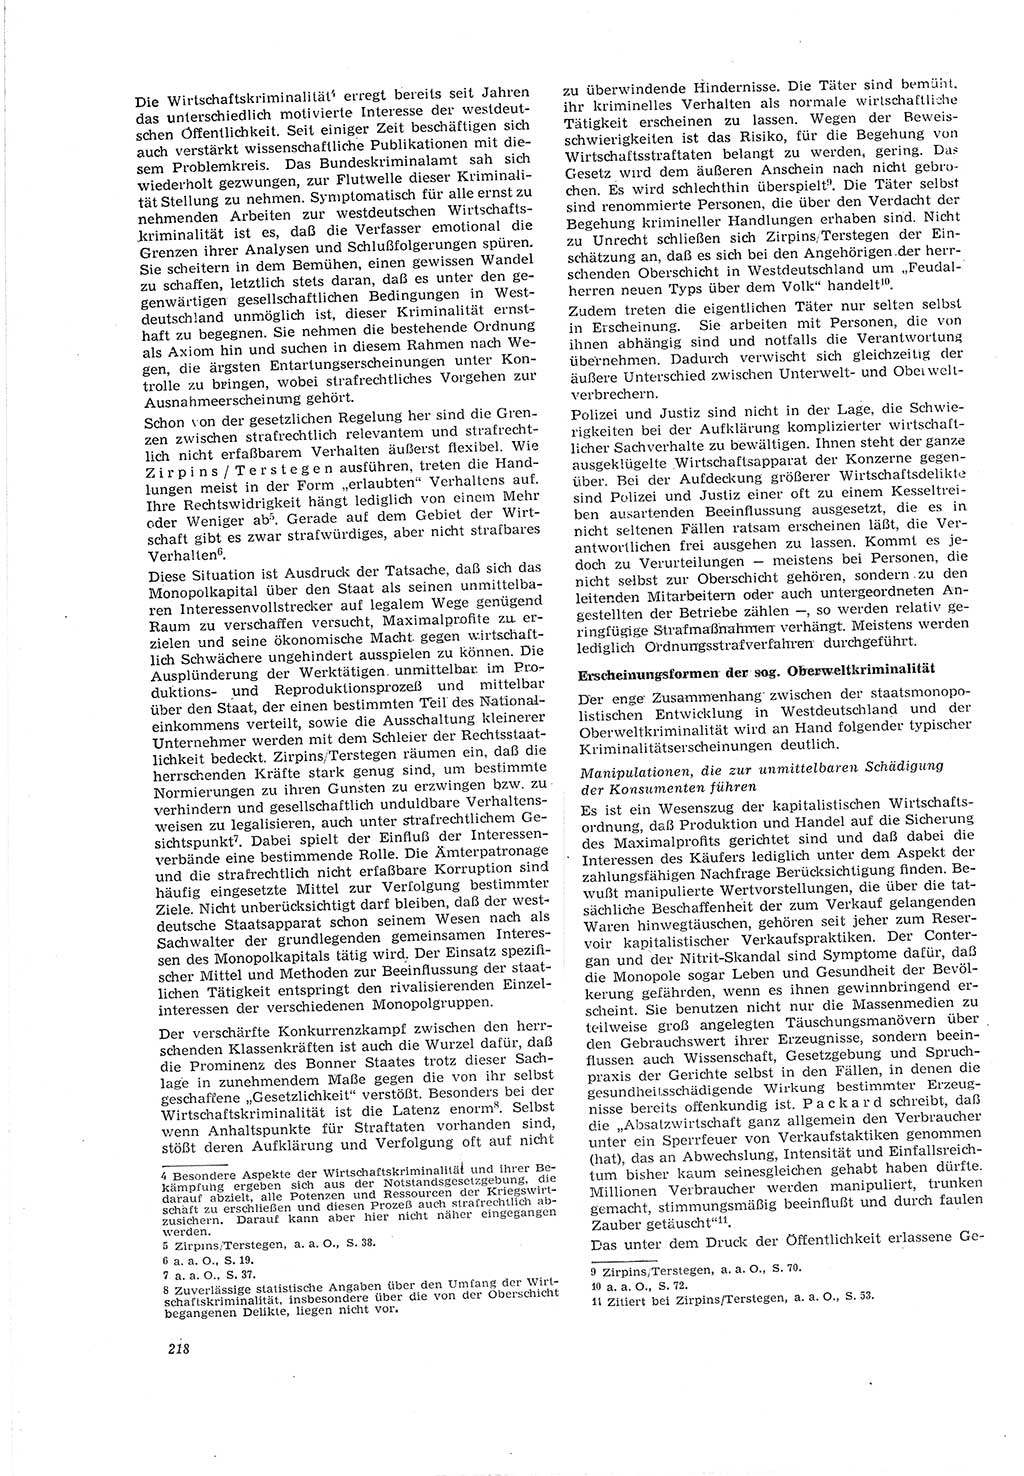 Neue Justiz (NJ), Zeitschrift für Recht und Rechtswissenschaft [Deutsche Demokratische Republik (DDR)], 20. Jahrgang 1966, Seite 218 (NJ DDR 1966, S. 218)